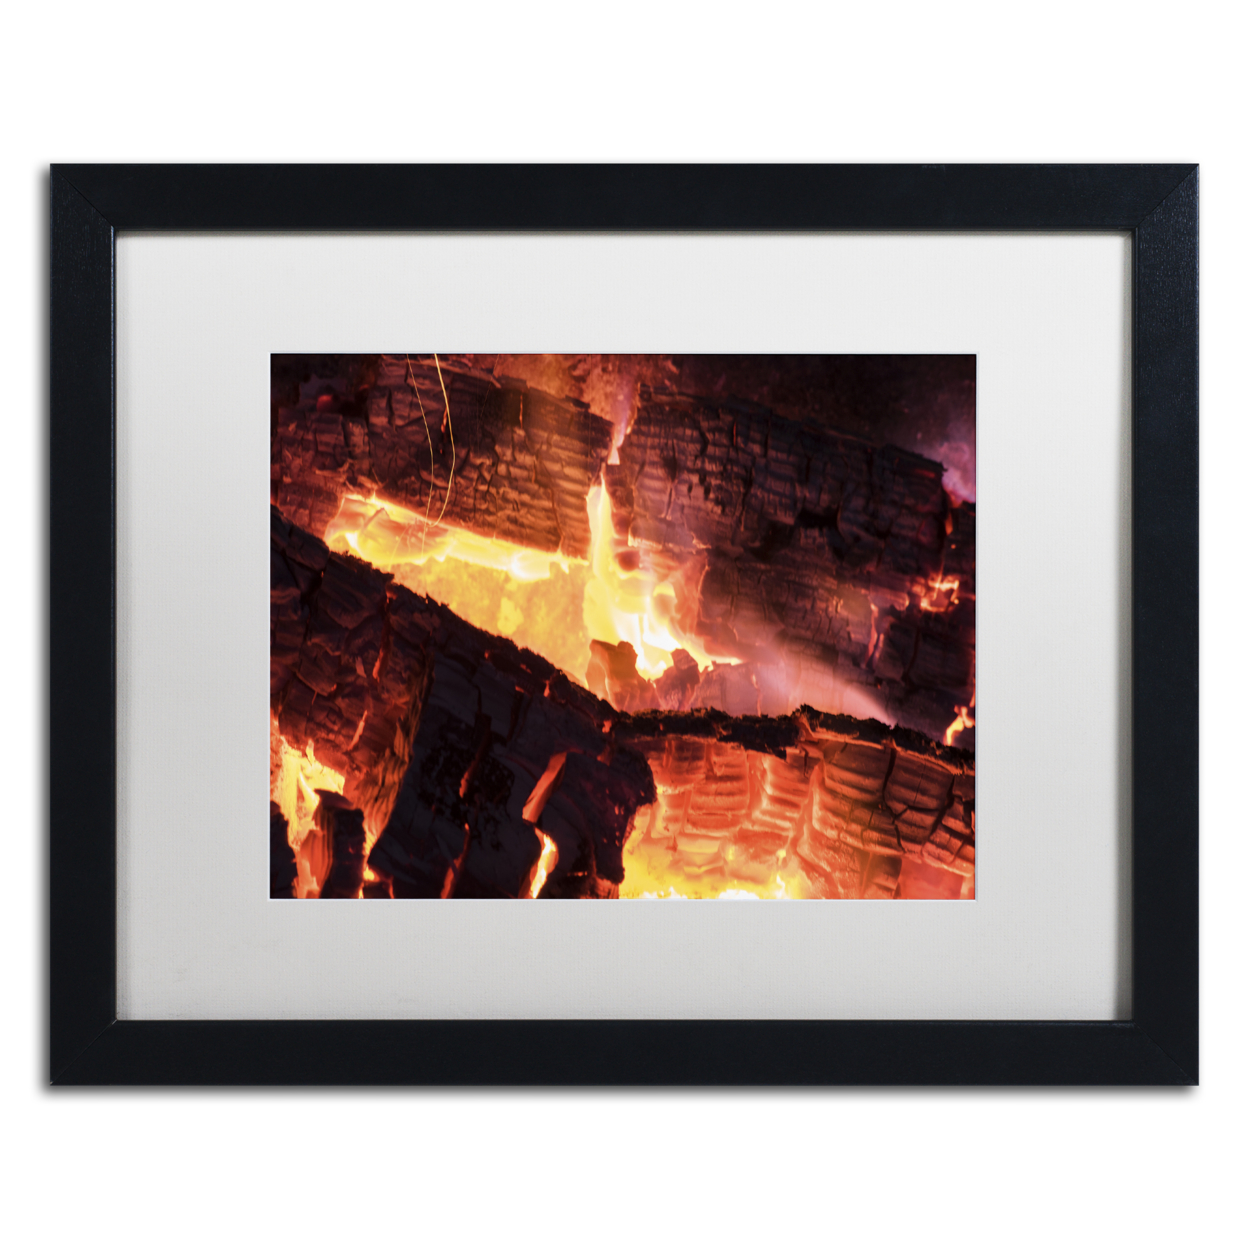 Kurt Shaffer 'Fireplace' Black Wooden Framed Art 18 X 22 Inches